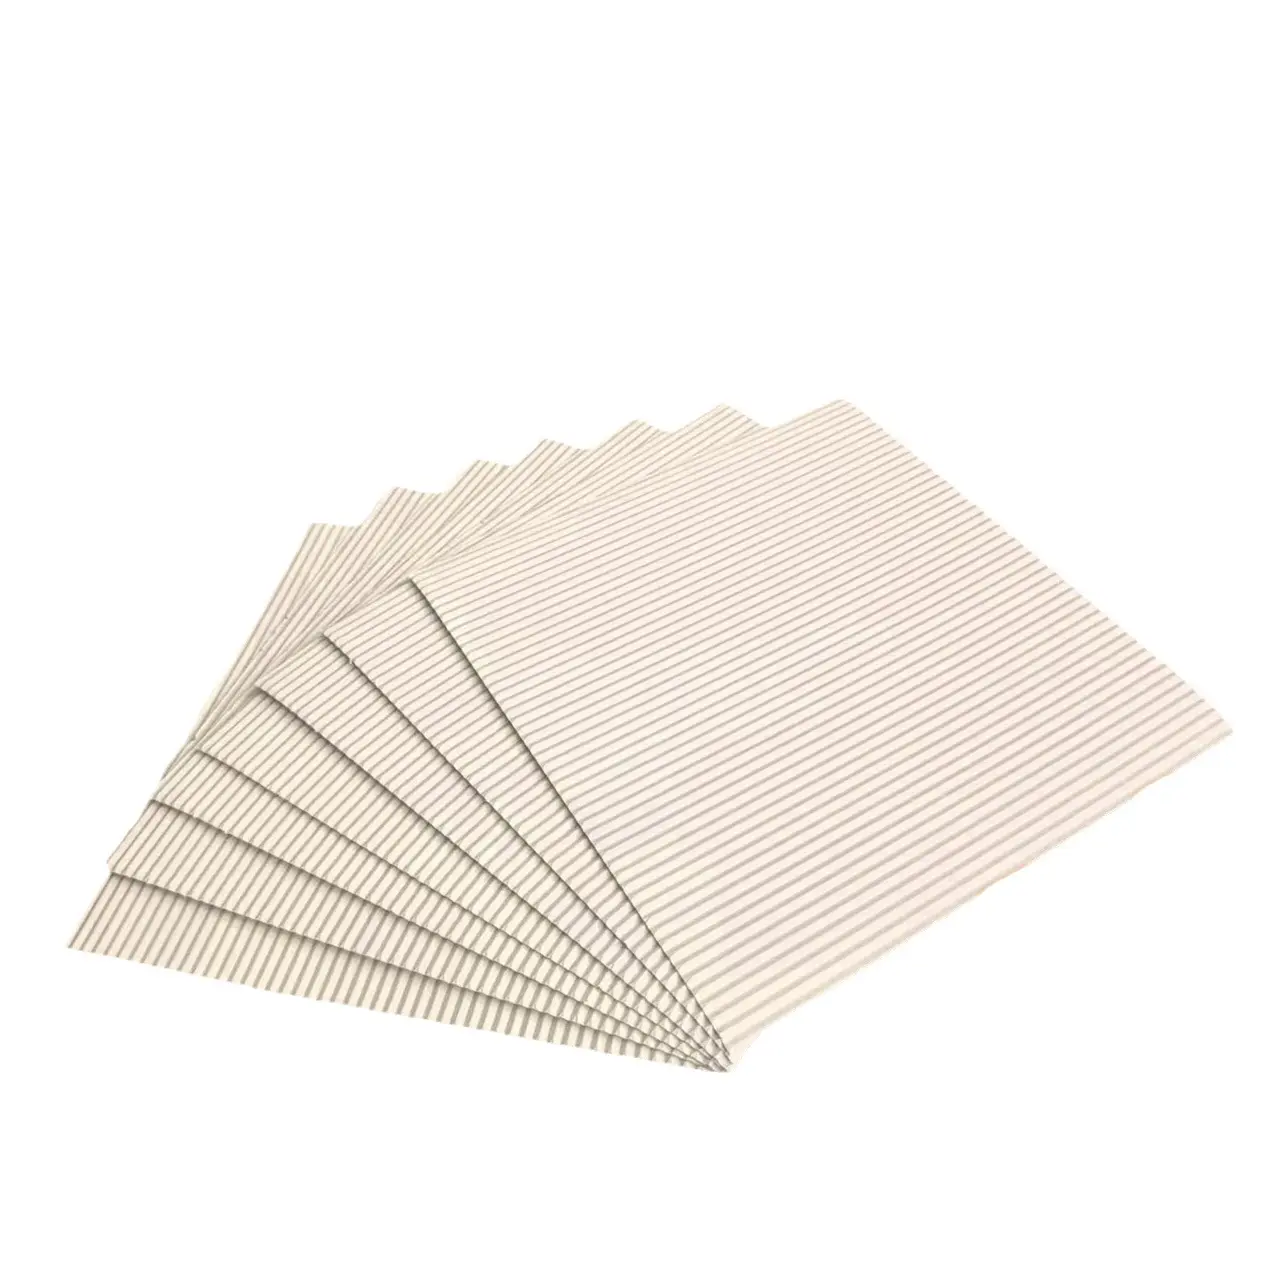 แผ่นกระดาษลูกฟูกสำหรับทำพิซซ่ากล่องกระดาษกลมสี่เหลี่ยมสำหรับอบอาหารเกรดใช้แล้วทิ้ง